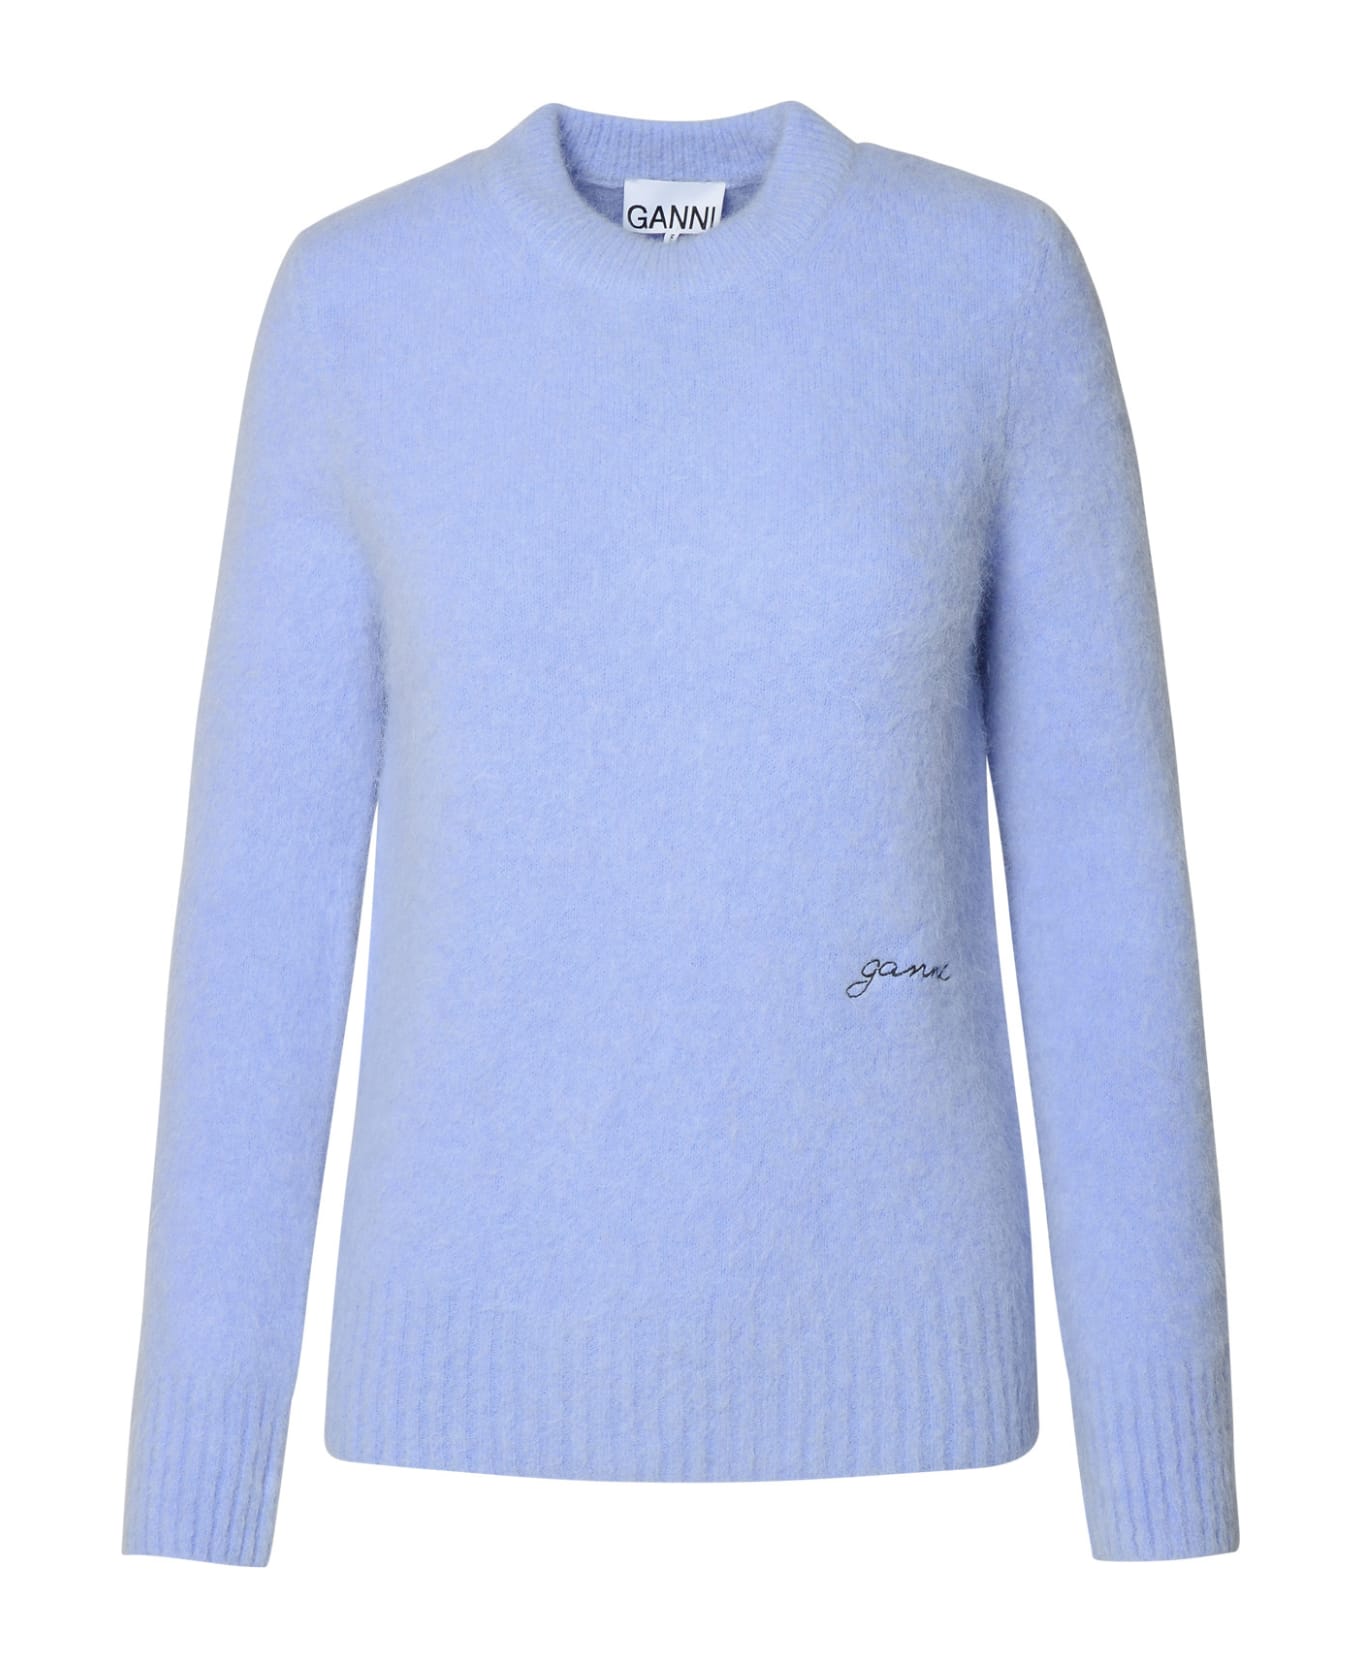 Ganni Light Blue Virgin Wool Blend Sweater - Liliac ニットウェア